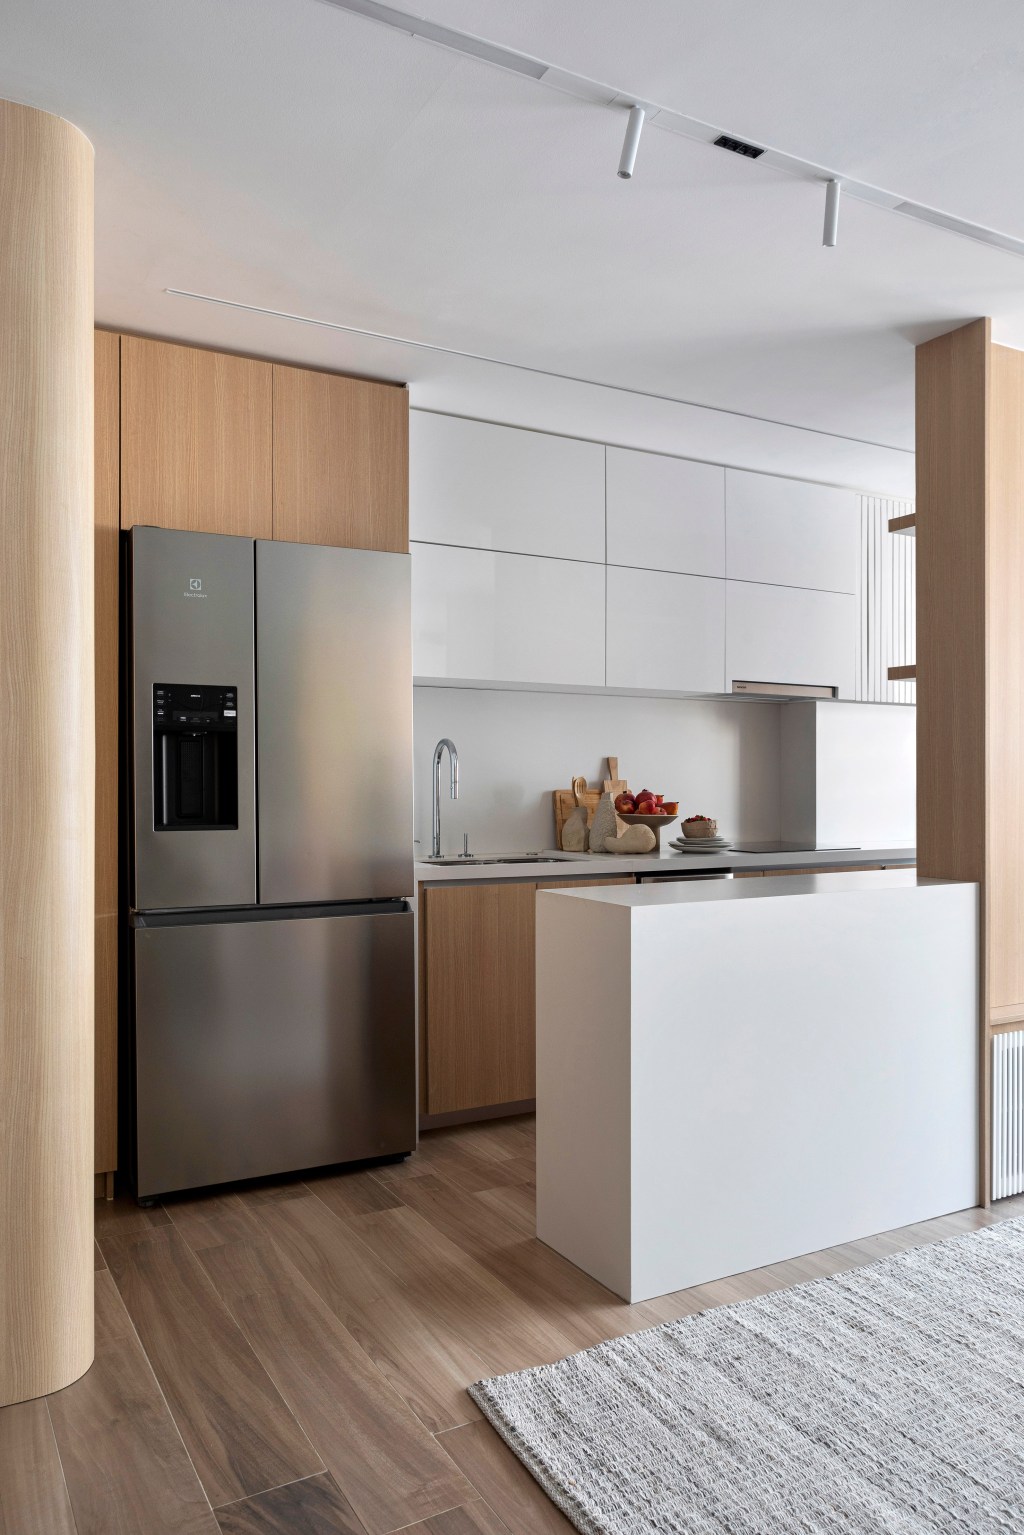 Apartamento de 70 m² parece maior com décor em tons neutros. Projeto de Fabiano Ravaglia. Na foto, sala integrada com cozinha e balcão branco.